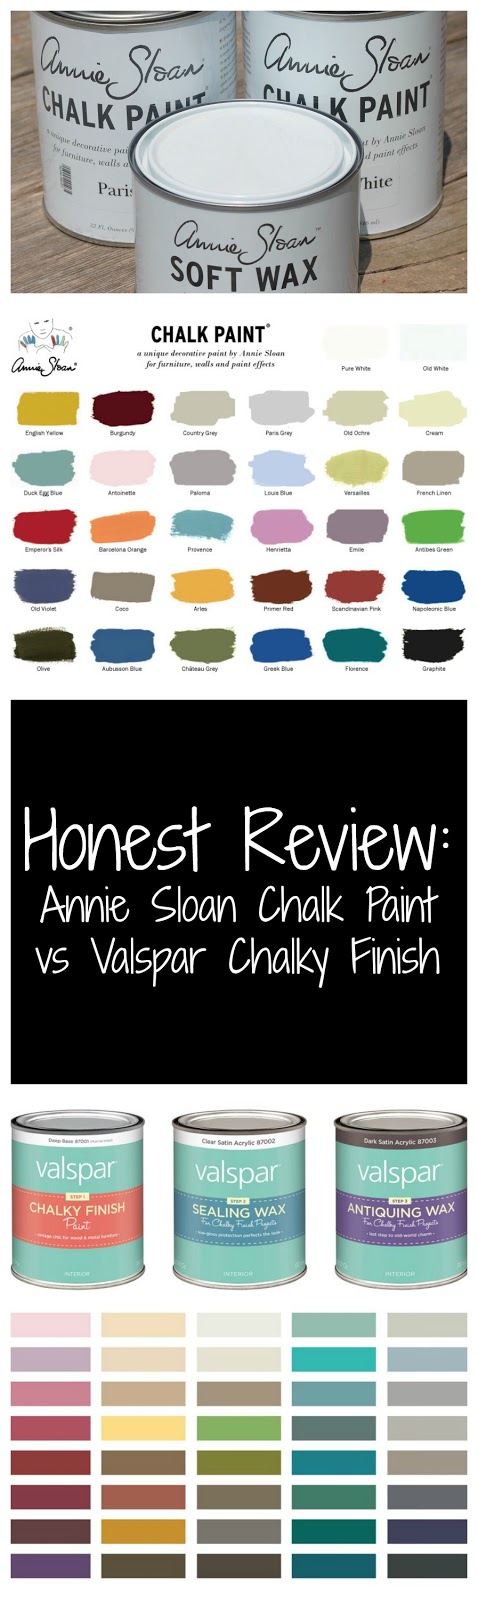 Honest Review Valspar Chalky Finish Vs Annie Sloan Chalk Paint